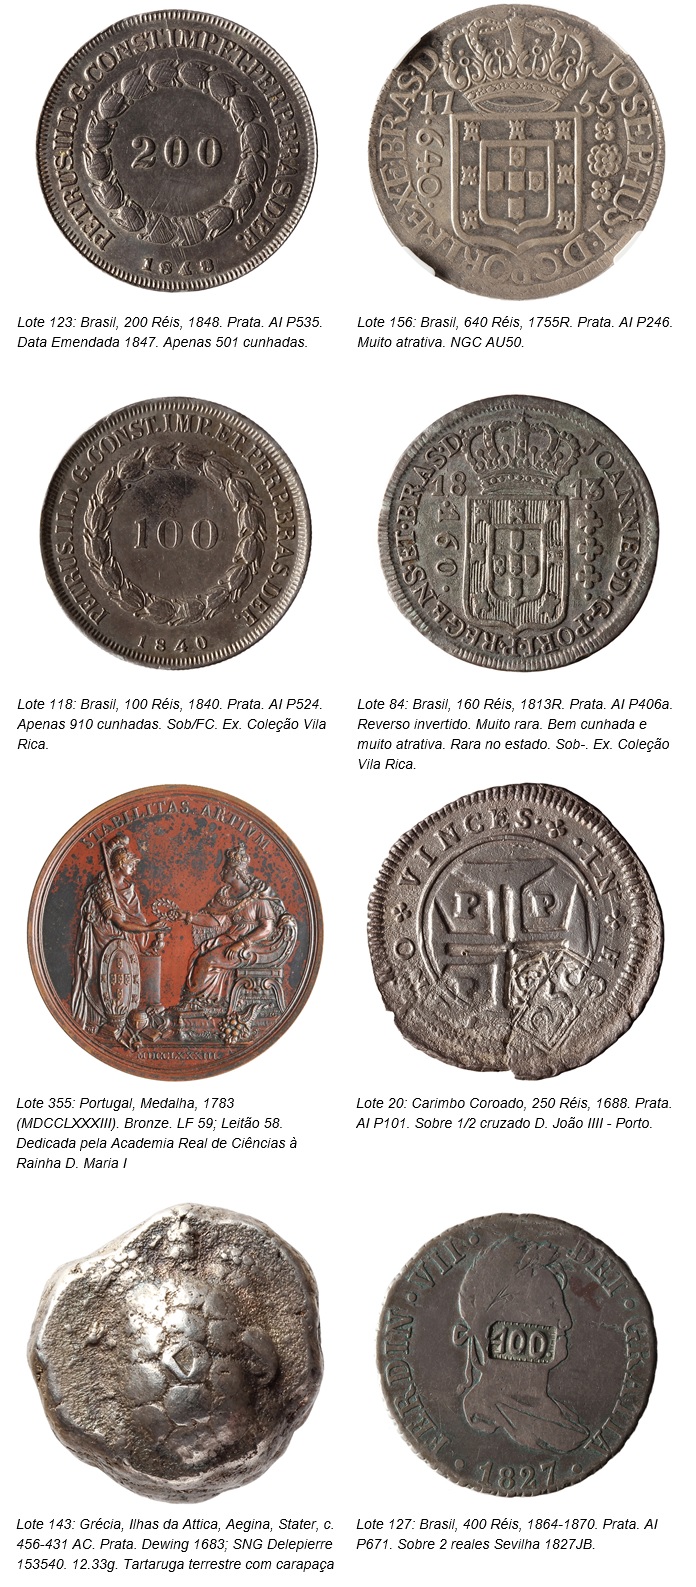 Aste Flávia Cardoso Soares: 7º Asta di monete di Vila Rica - Parte Collezione Vila Rica 2, in primo piano. Rivelazione.